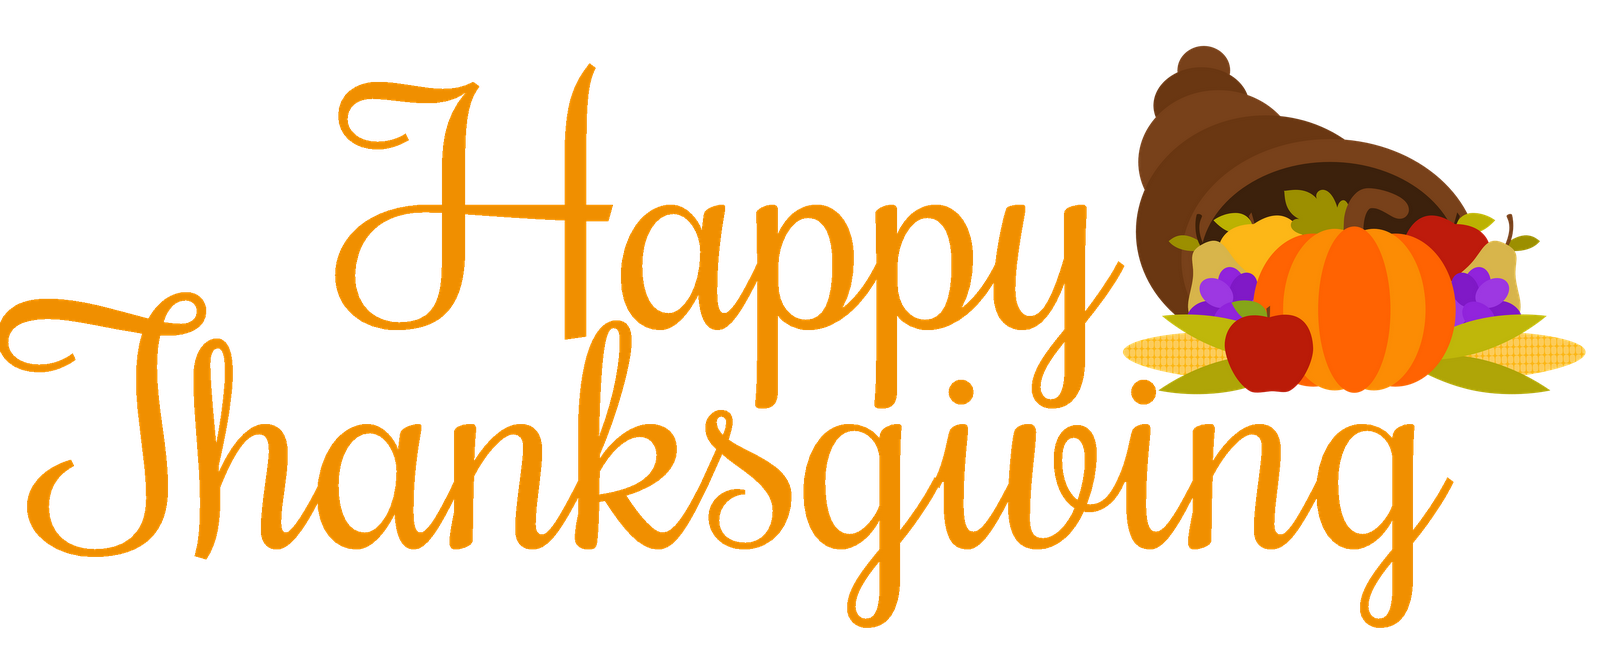 turkey with Happy Thanksgivin